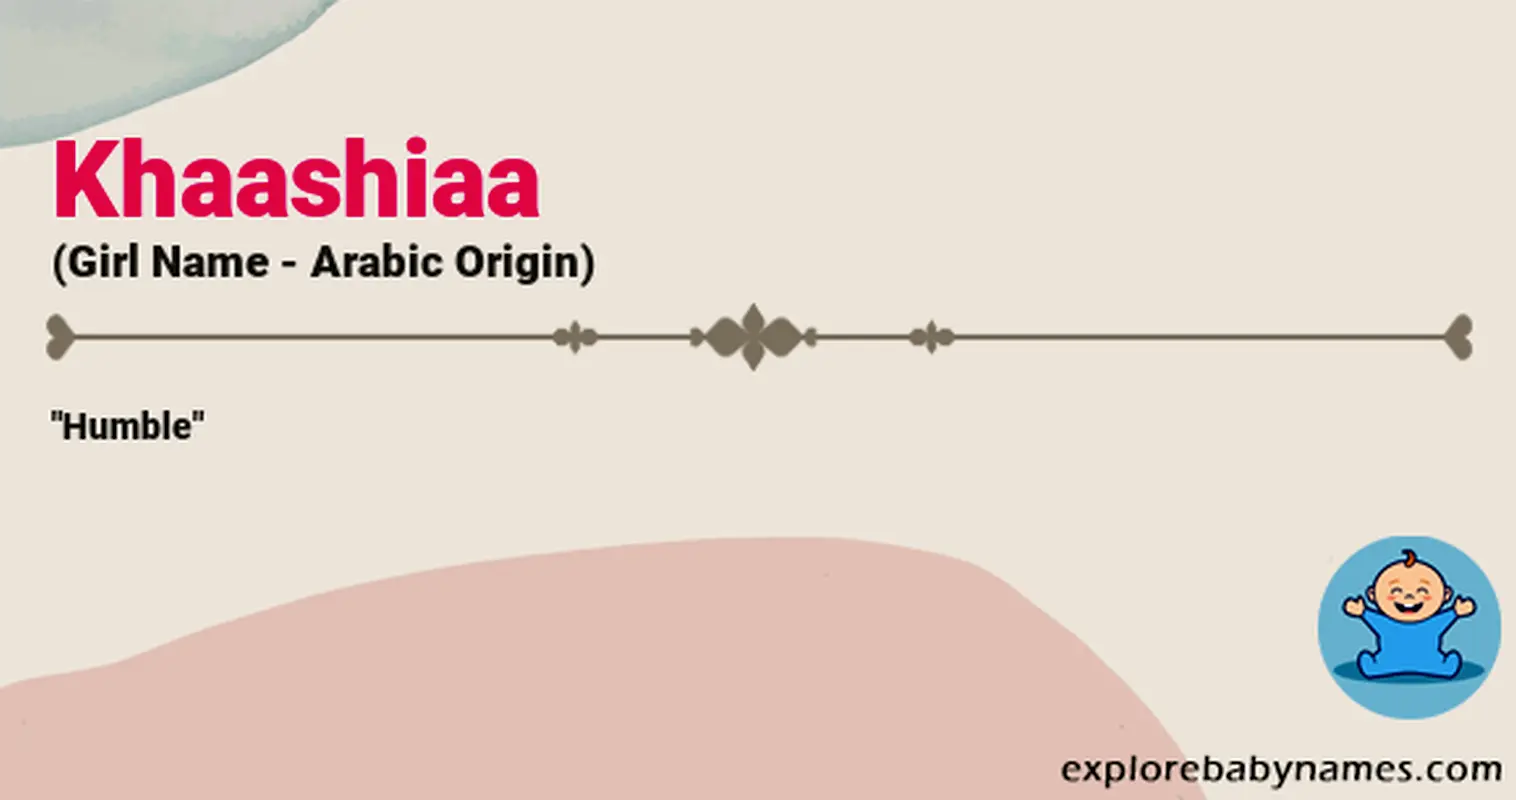 Meaning of Khaashiaa